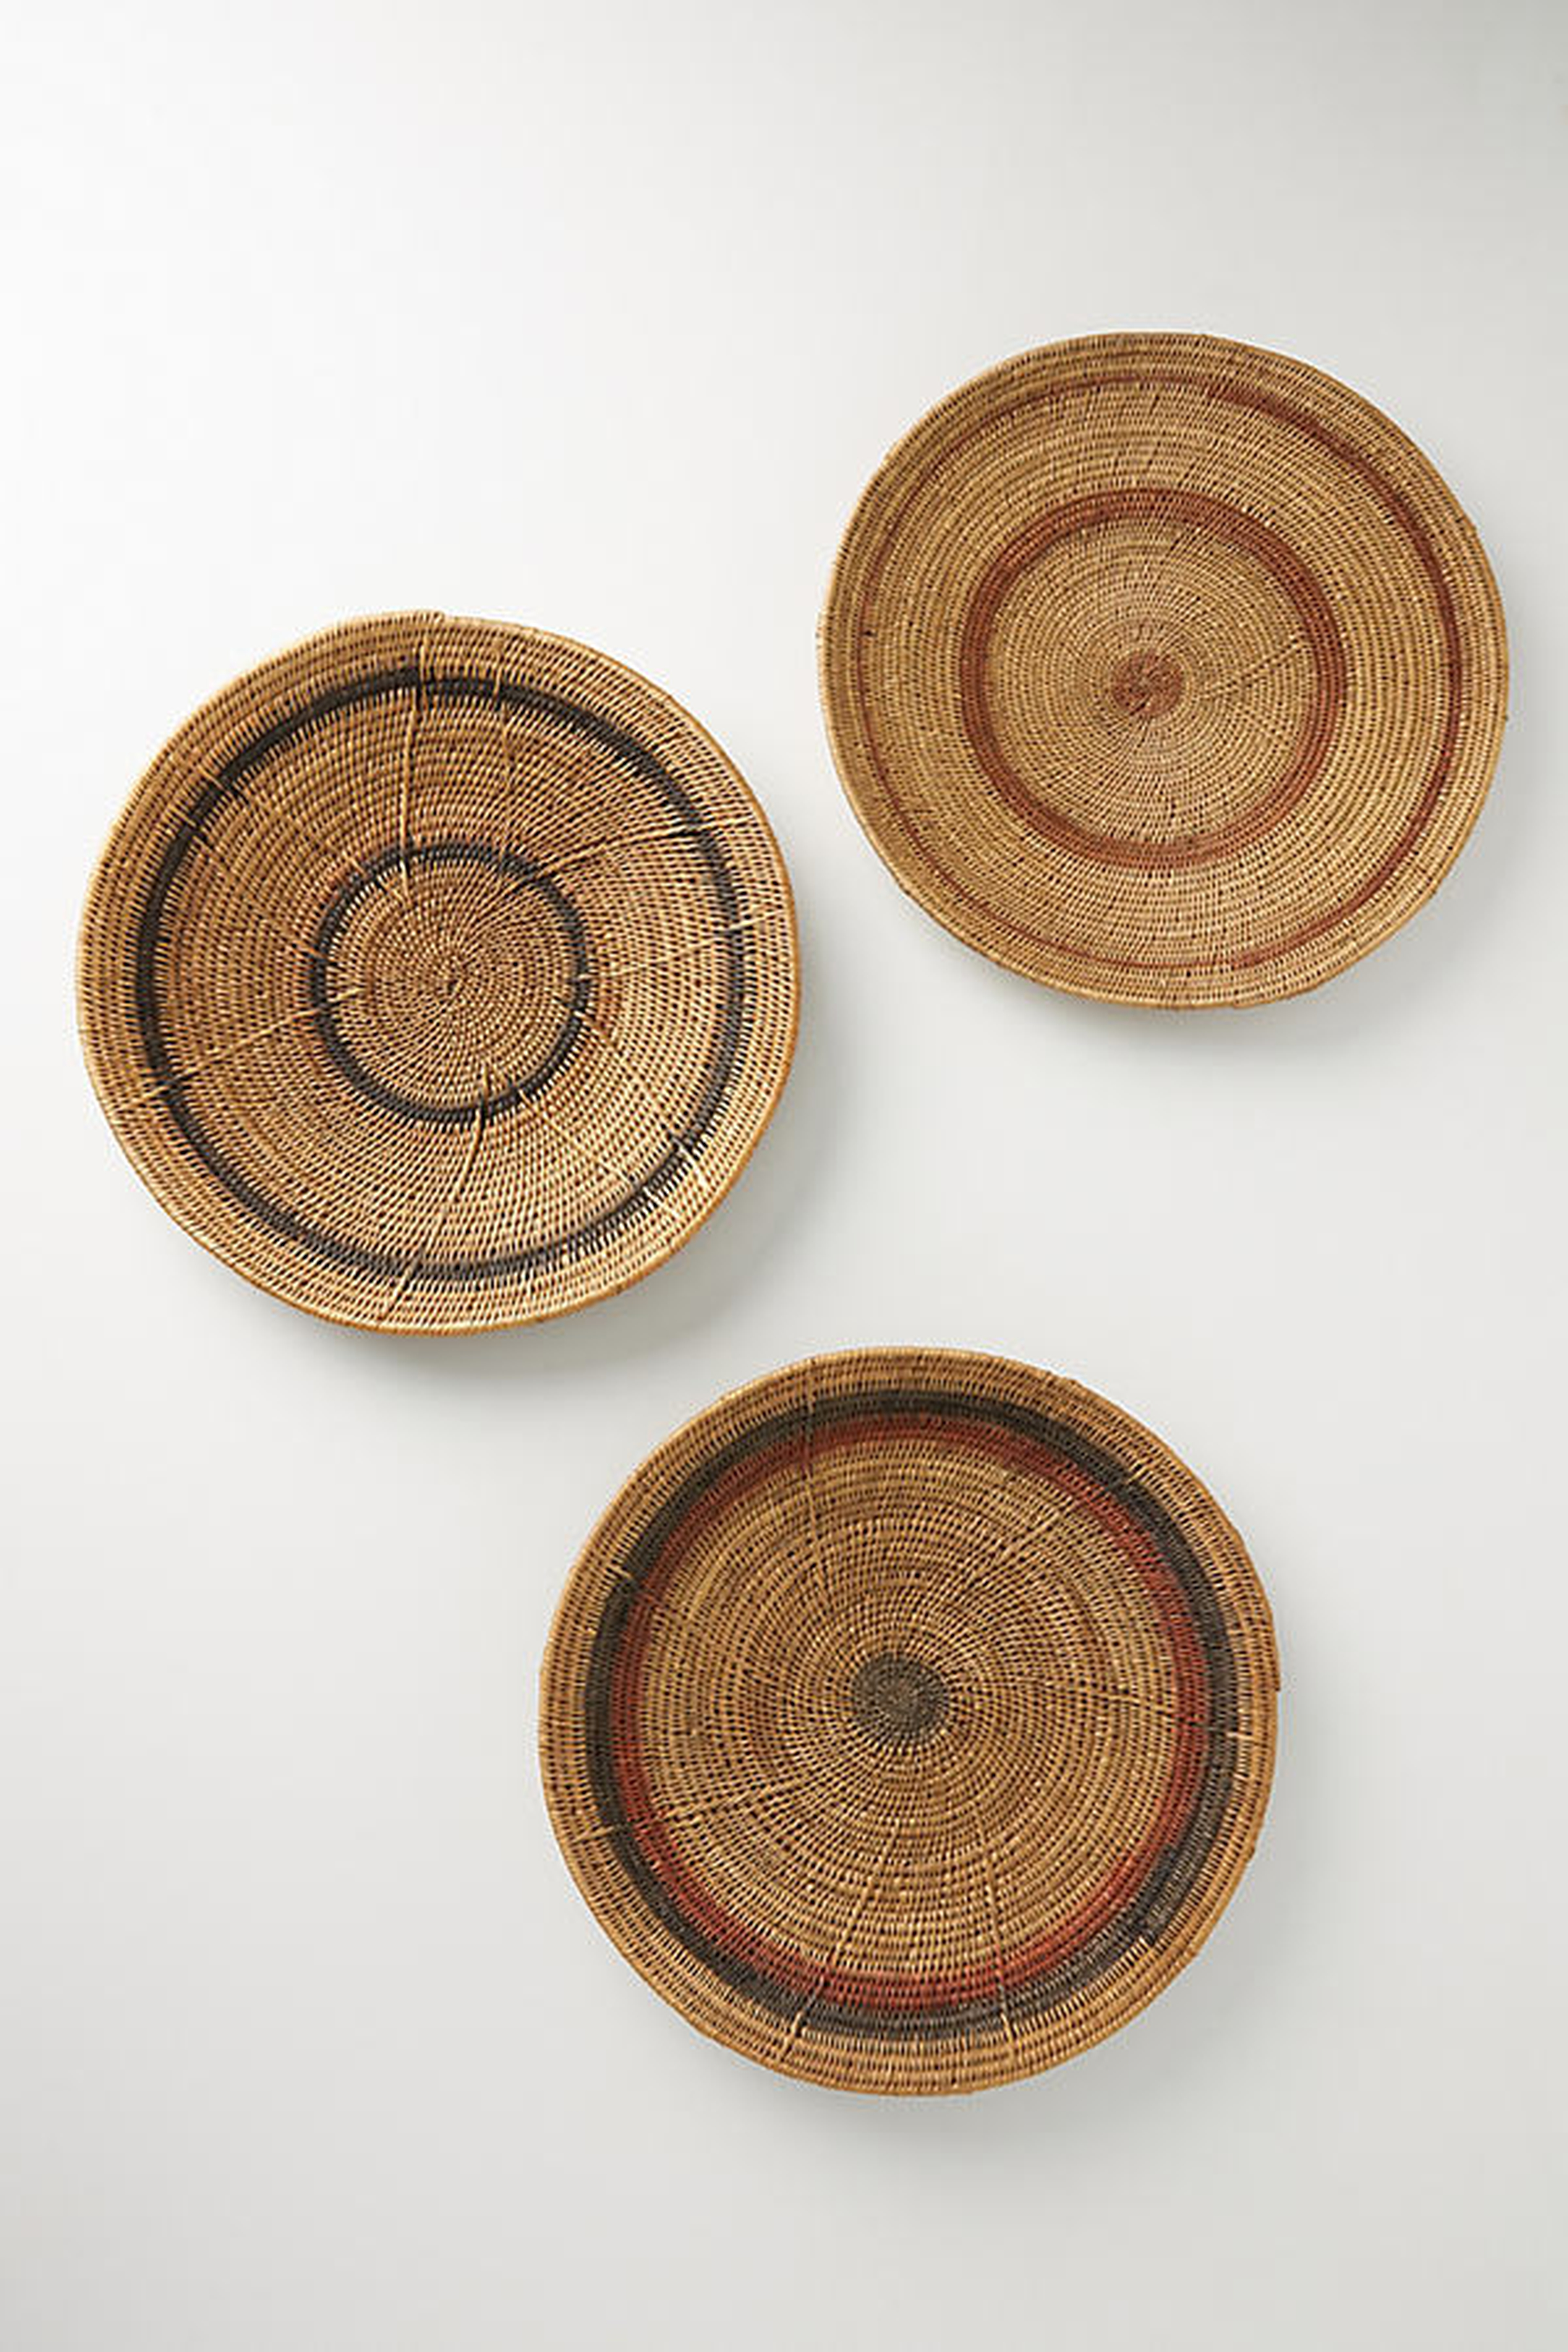 Zania Baskets, Set of 3 - Anthropologie